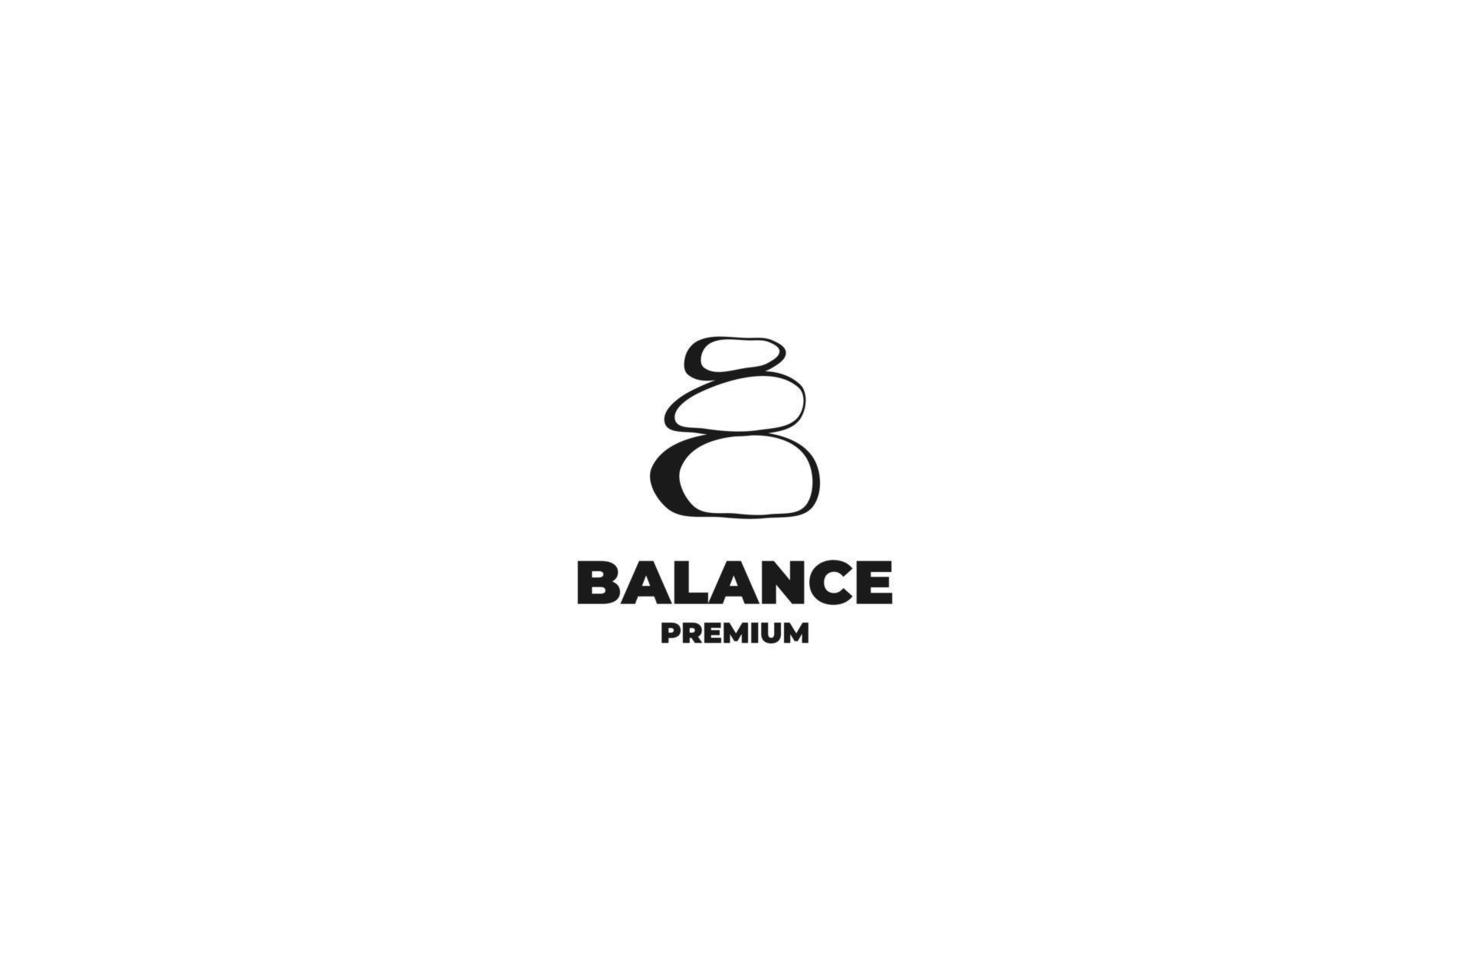 Zen stone rock balancing logo design vector template